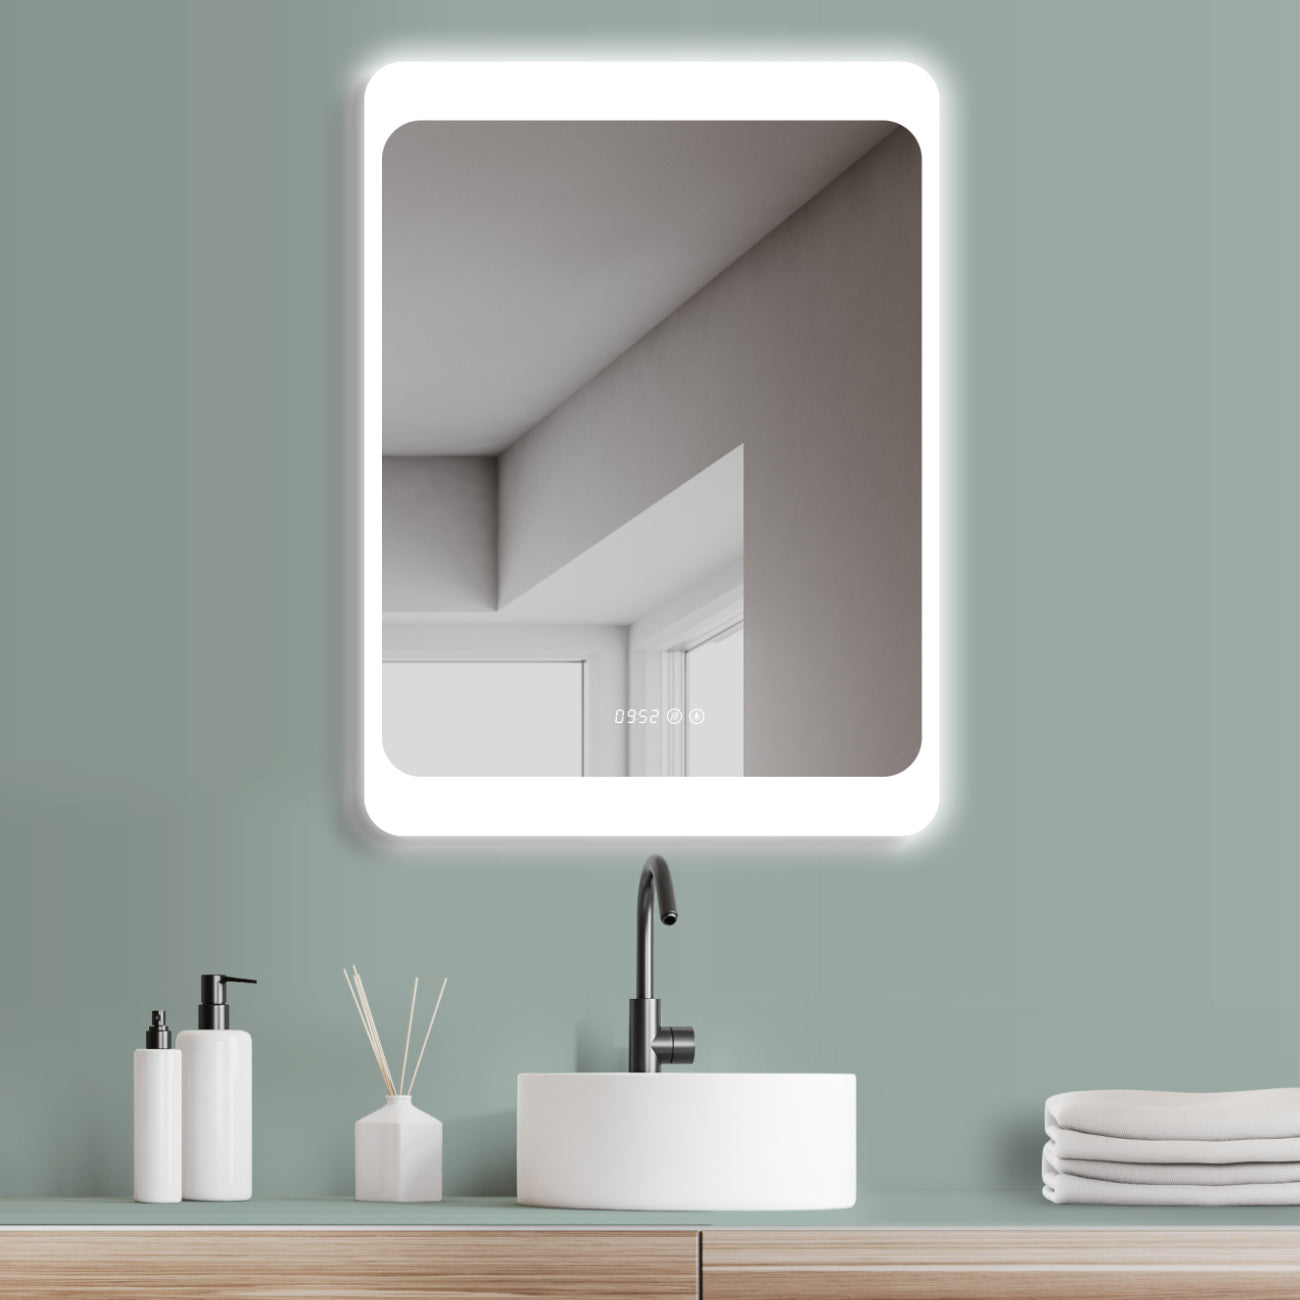 Design-Badspiegel mit Beleuchtung, Lichtwechsel, Antibeschlag-Funktion und Digital Uhr